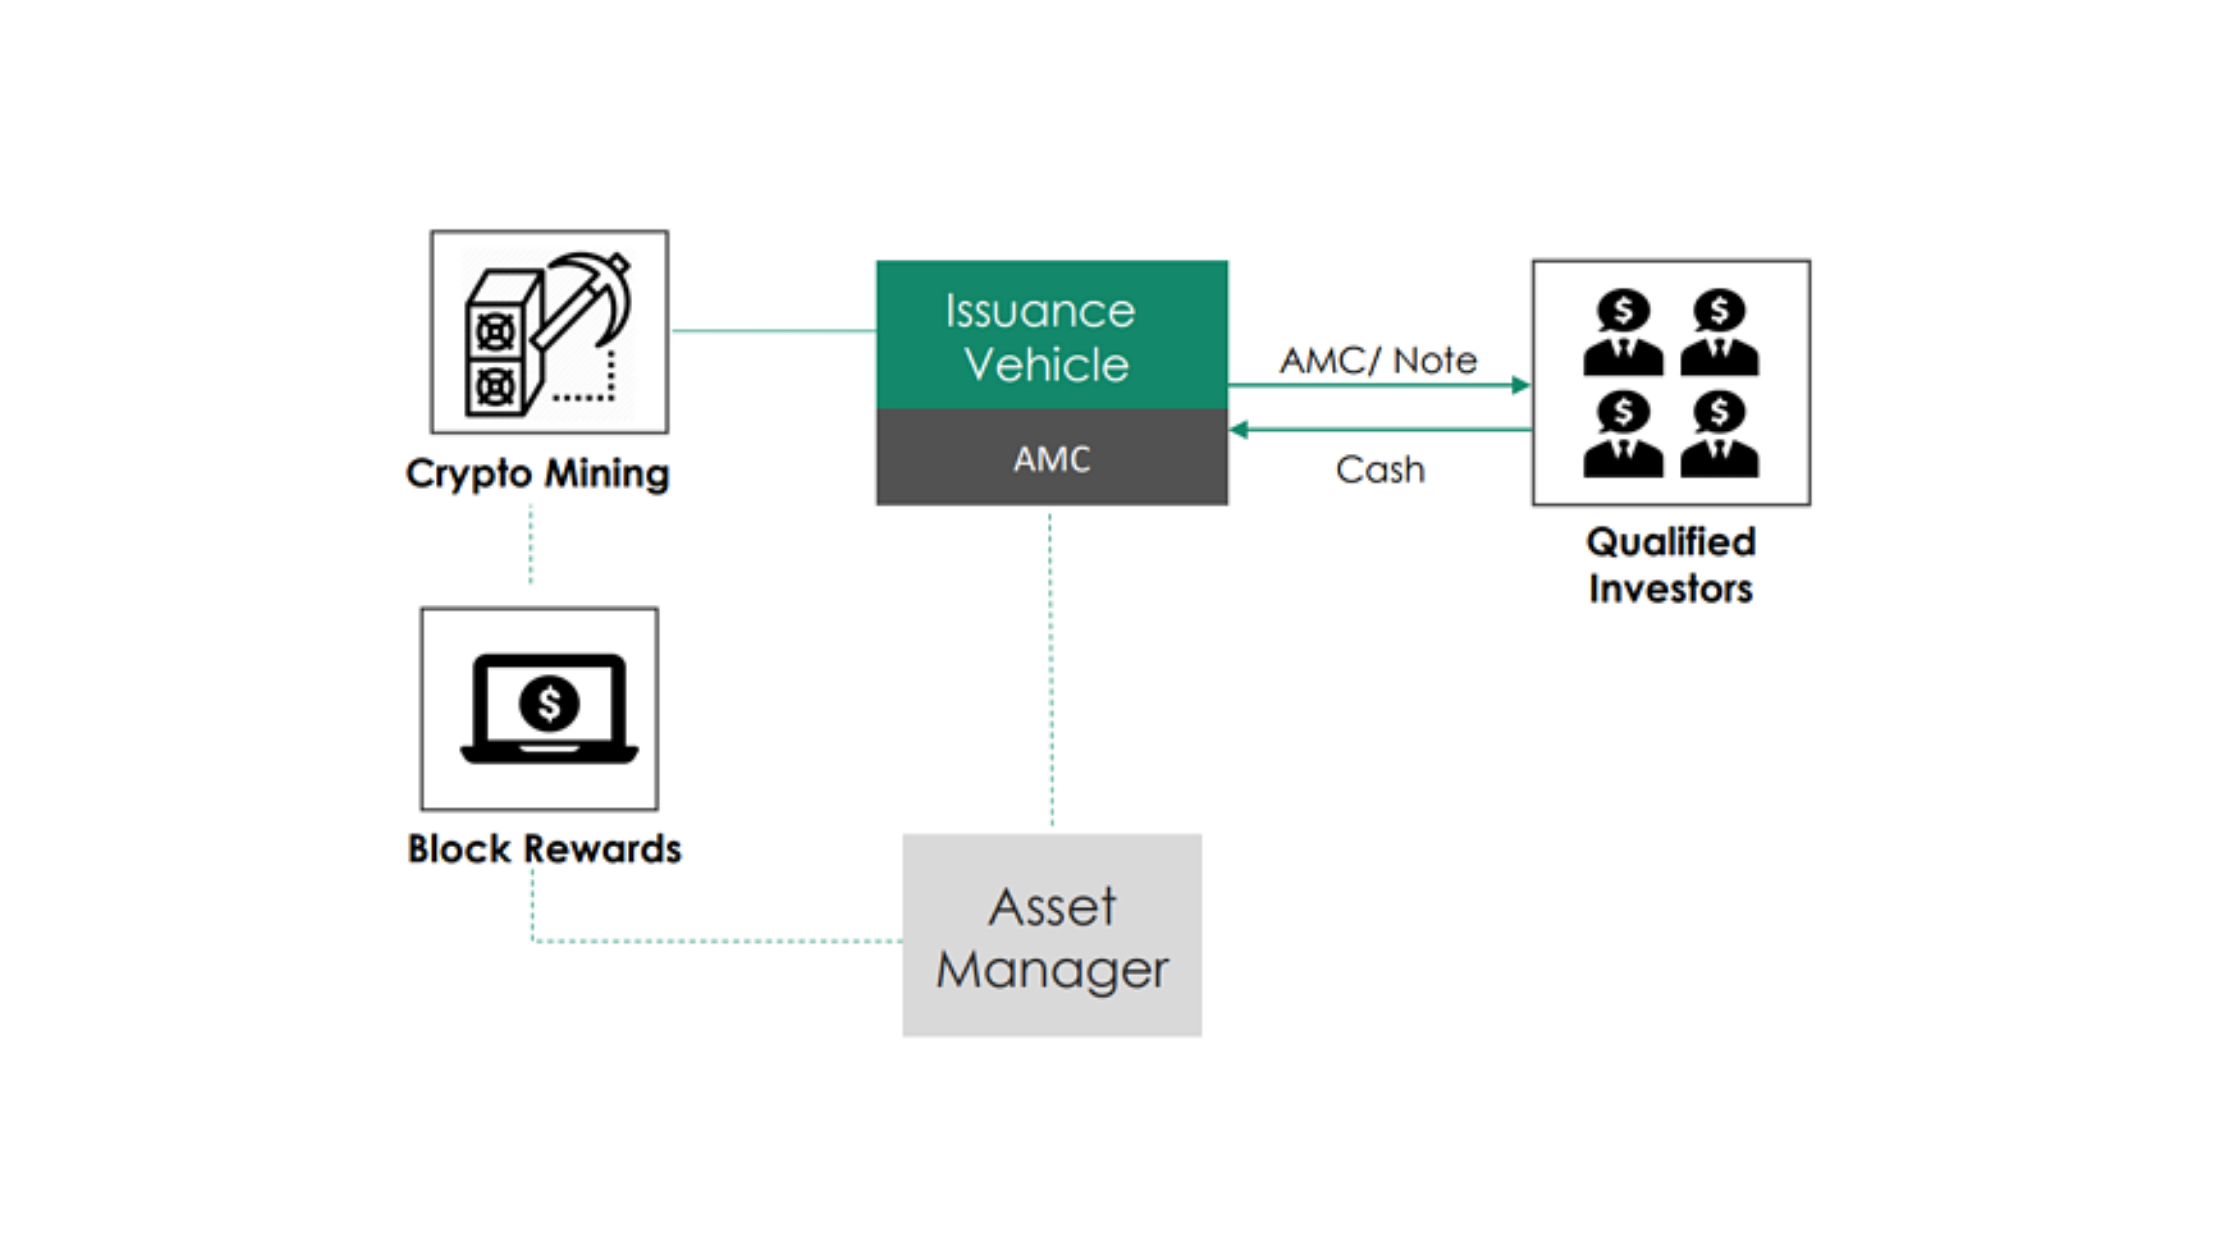 Case Study - AMC on Crypto Mining